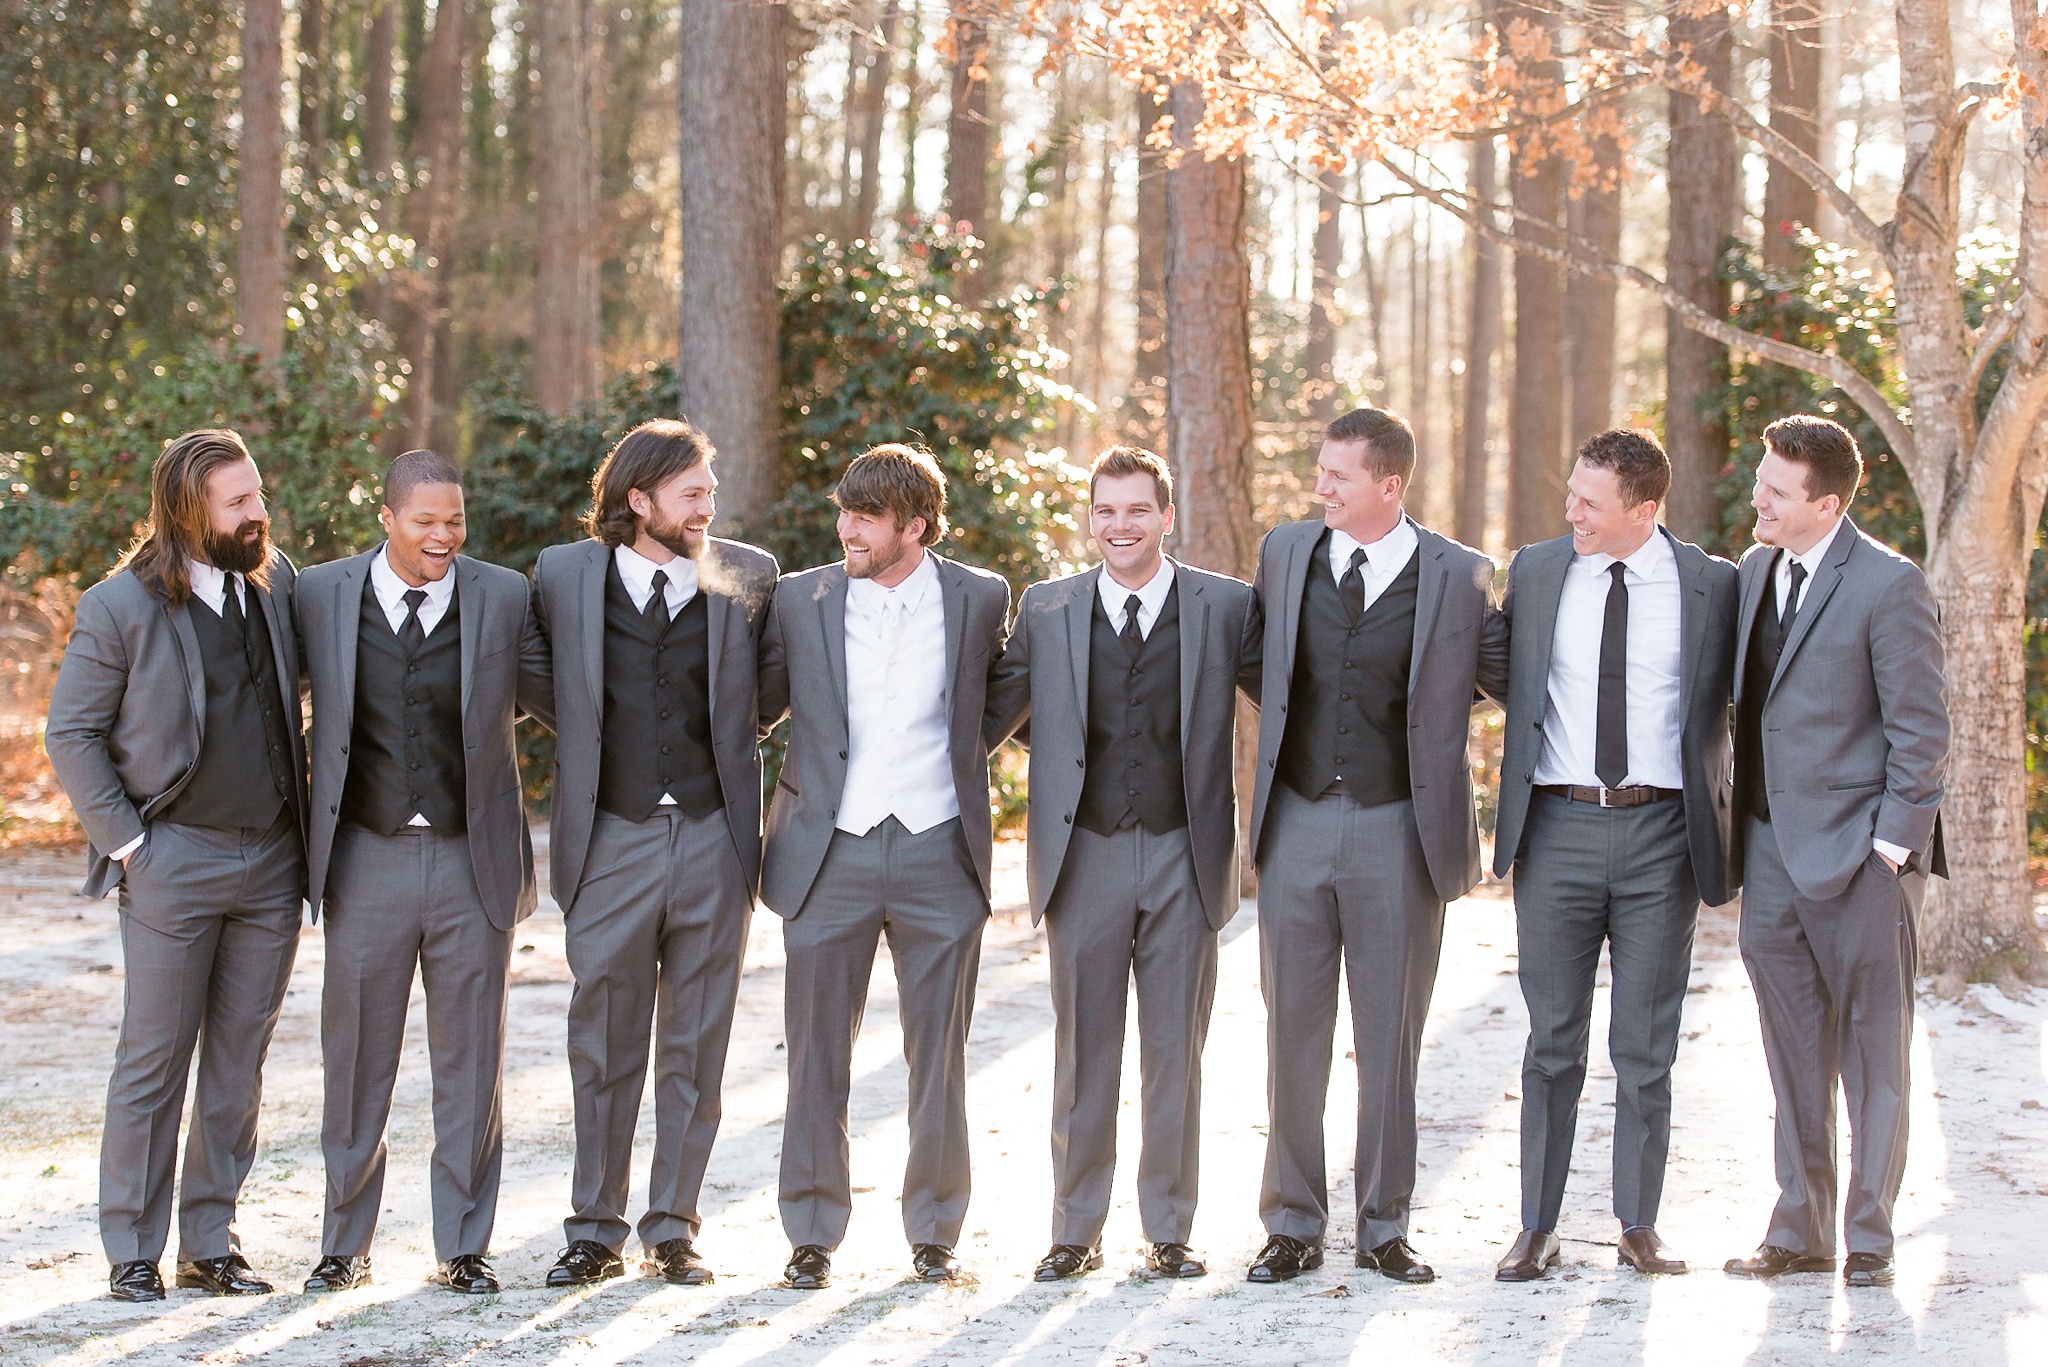 Snowy Winter Aldridge Gardens Wedding | Birmingham Alabama Wedding Photographers_0020.jpg